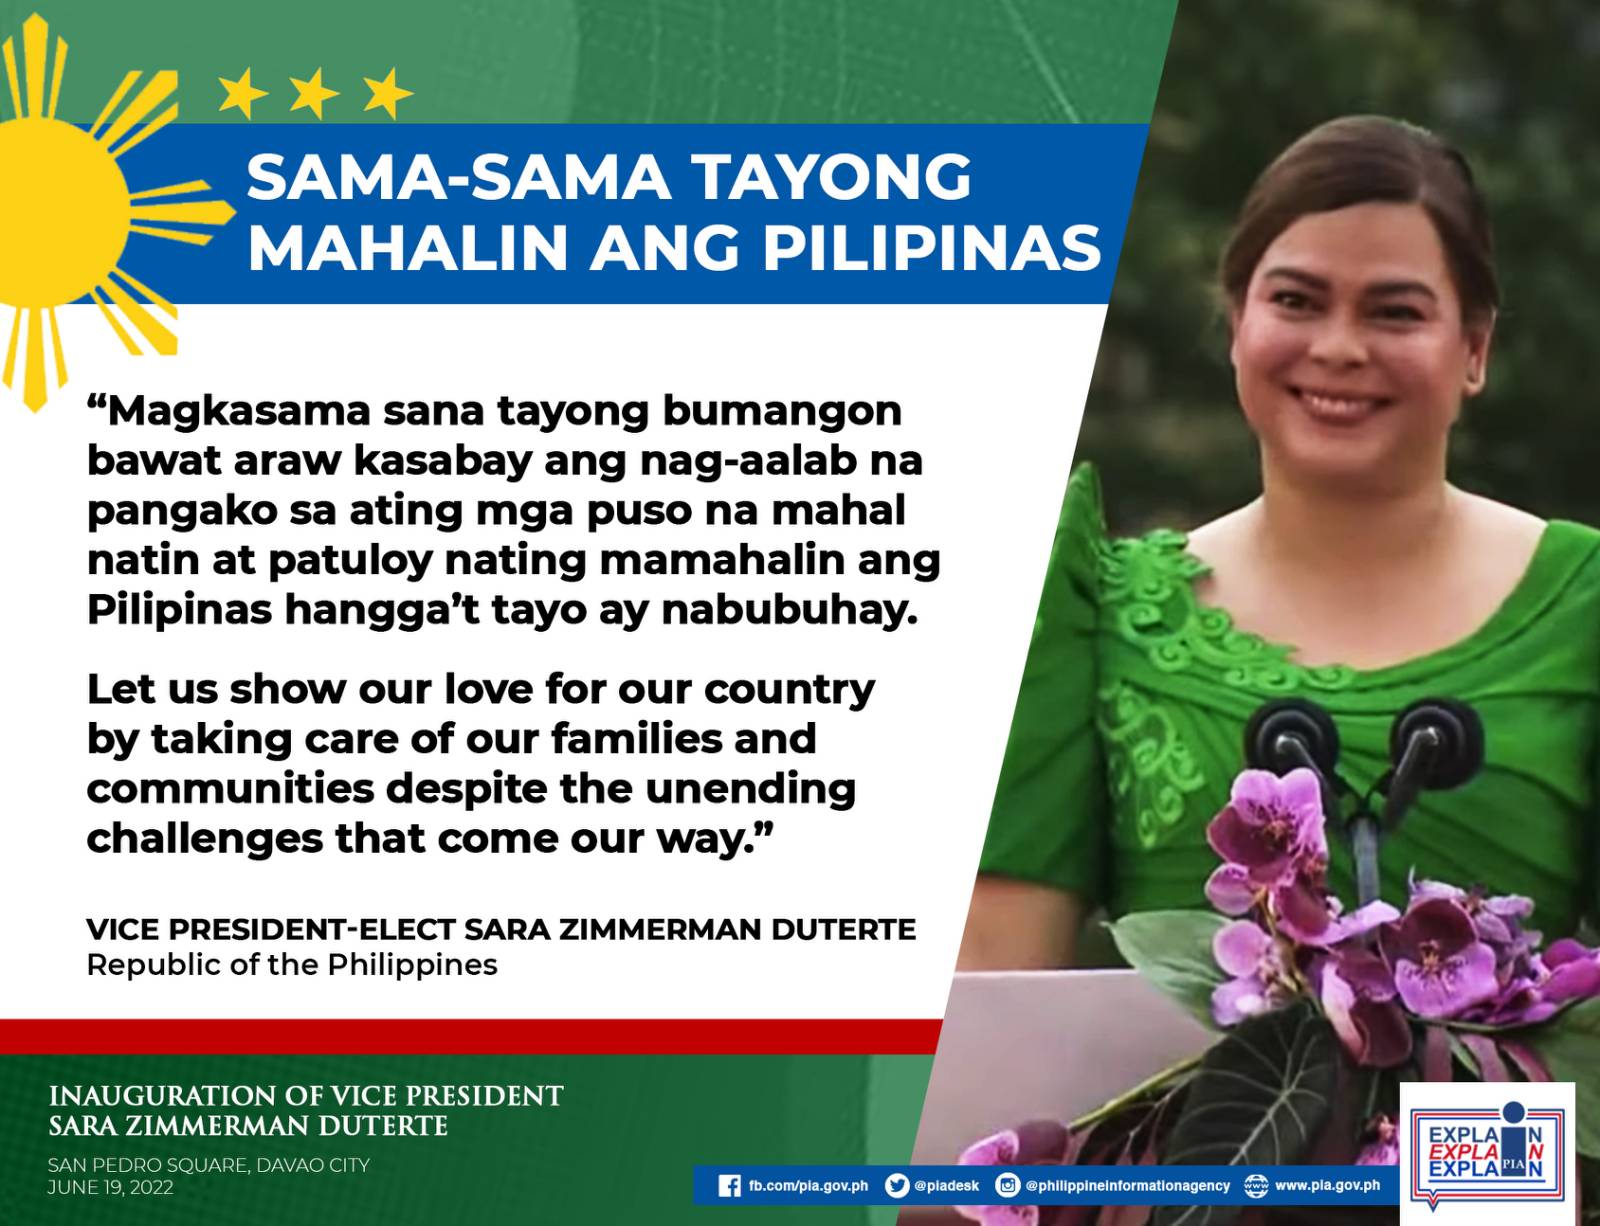 Mahalin ang Pilipinas -- VP-elect Sara Zimmerman Duterte